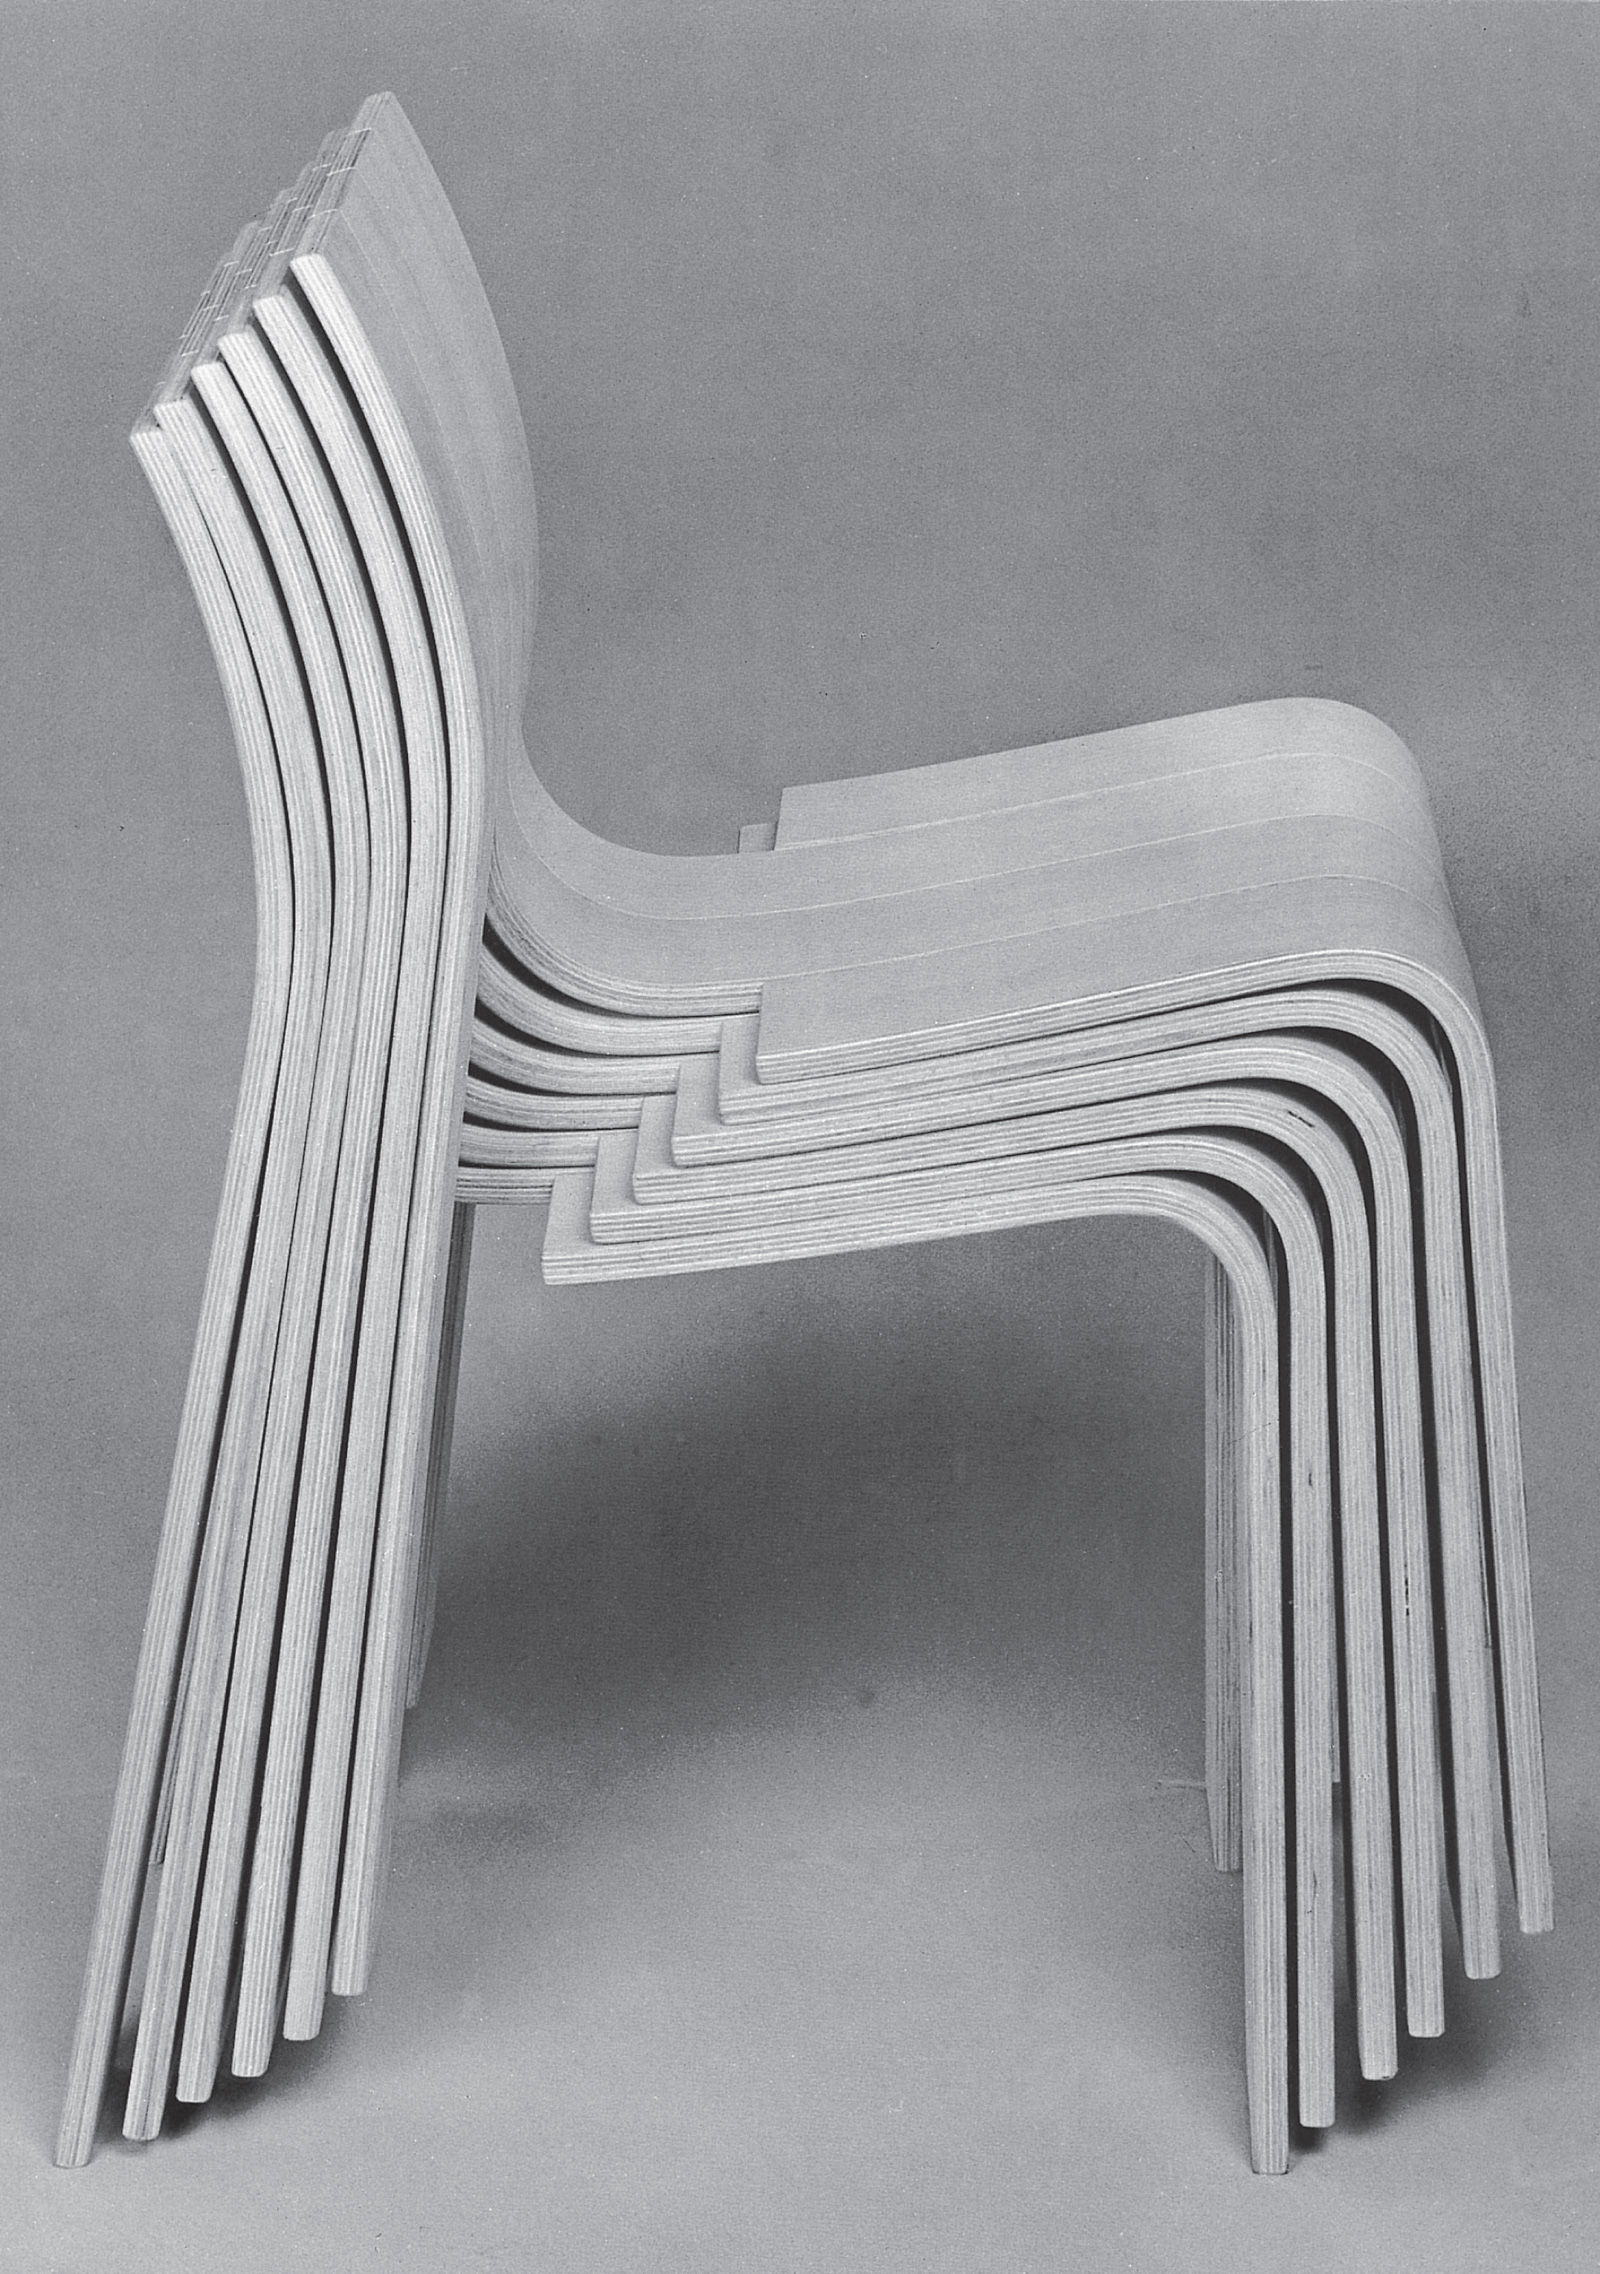 Strip chair